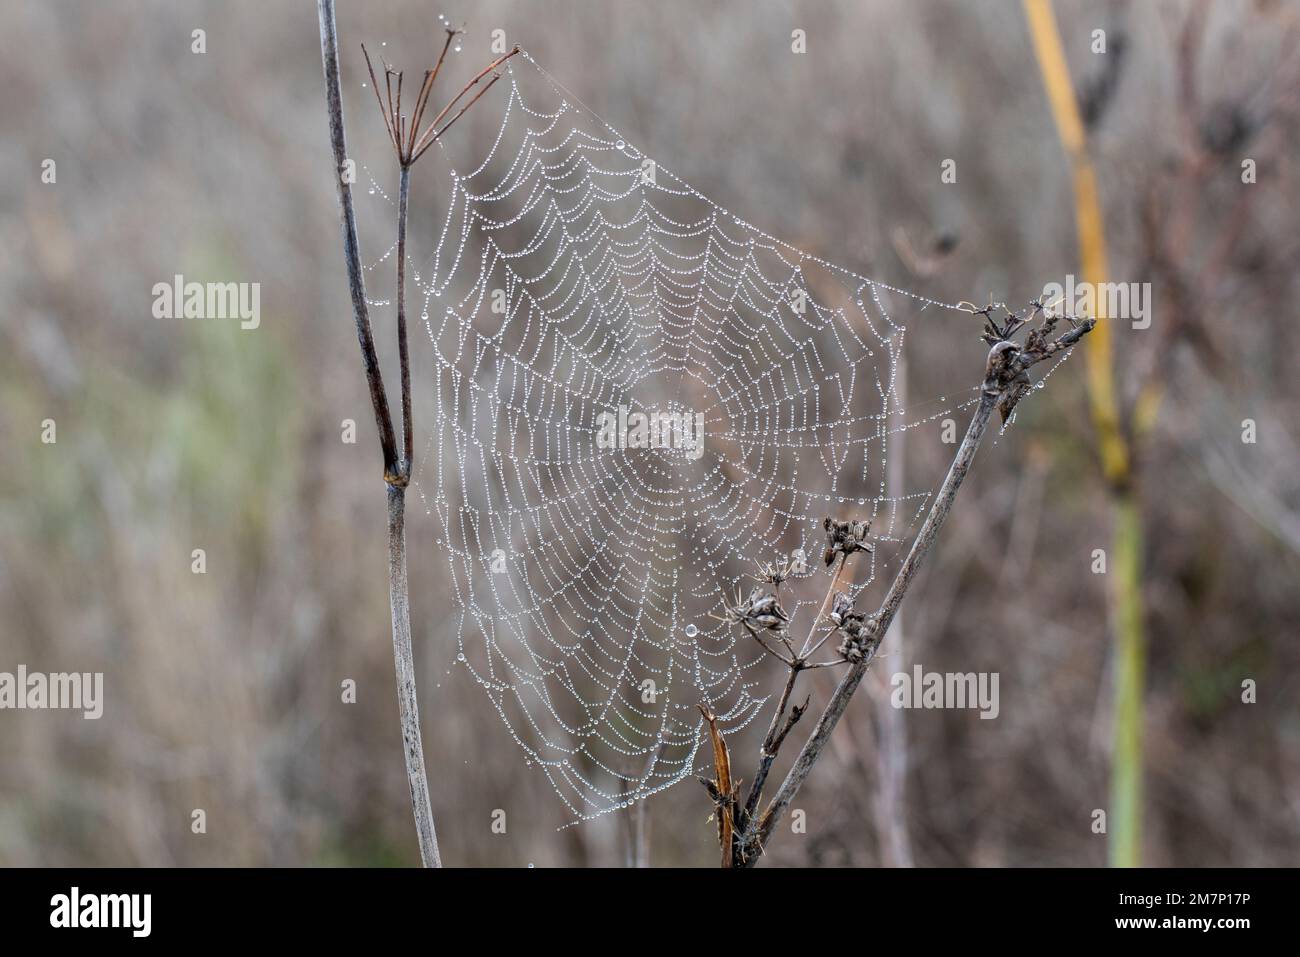 Gotas de agua de Rocío atrapadas en una tela de araña en una mañana fría de invierno Stockfoto